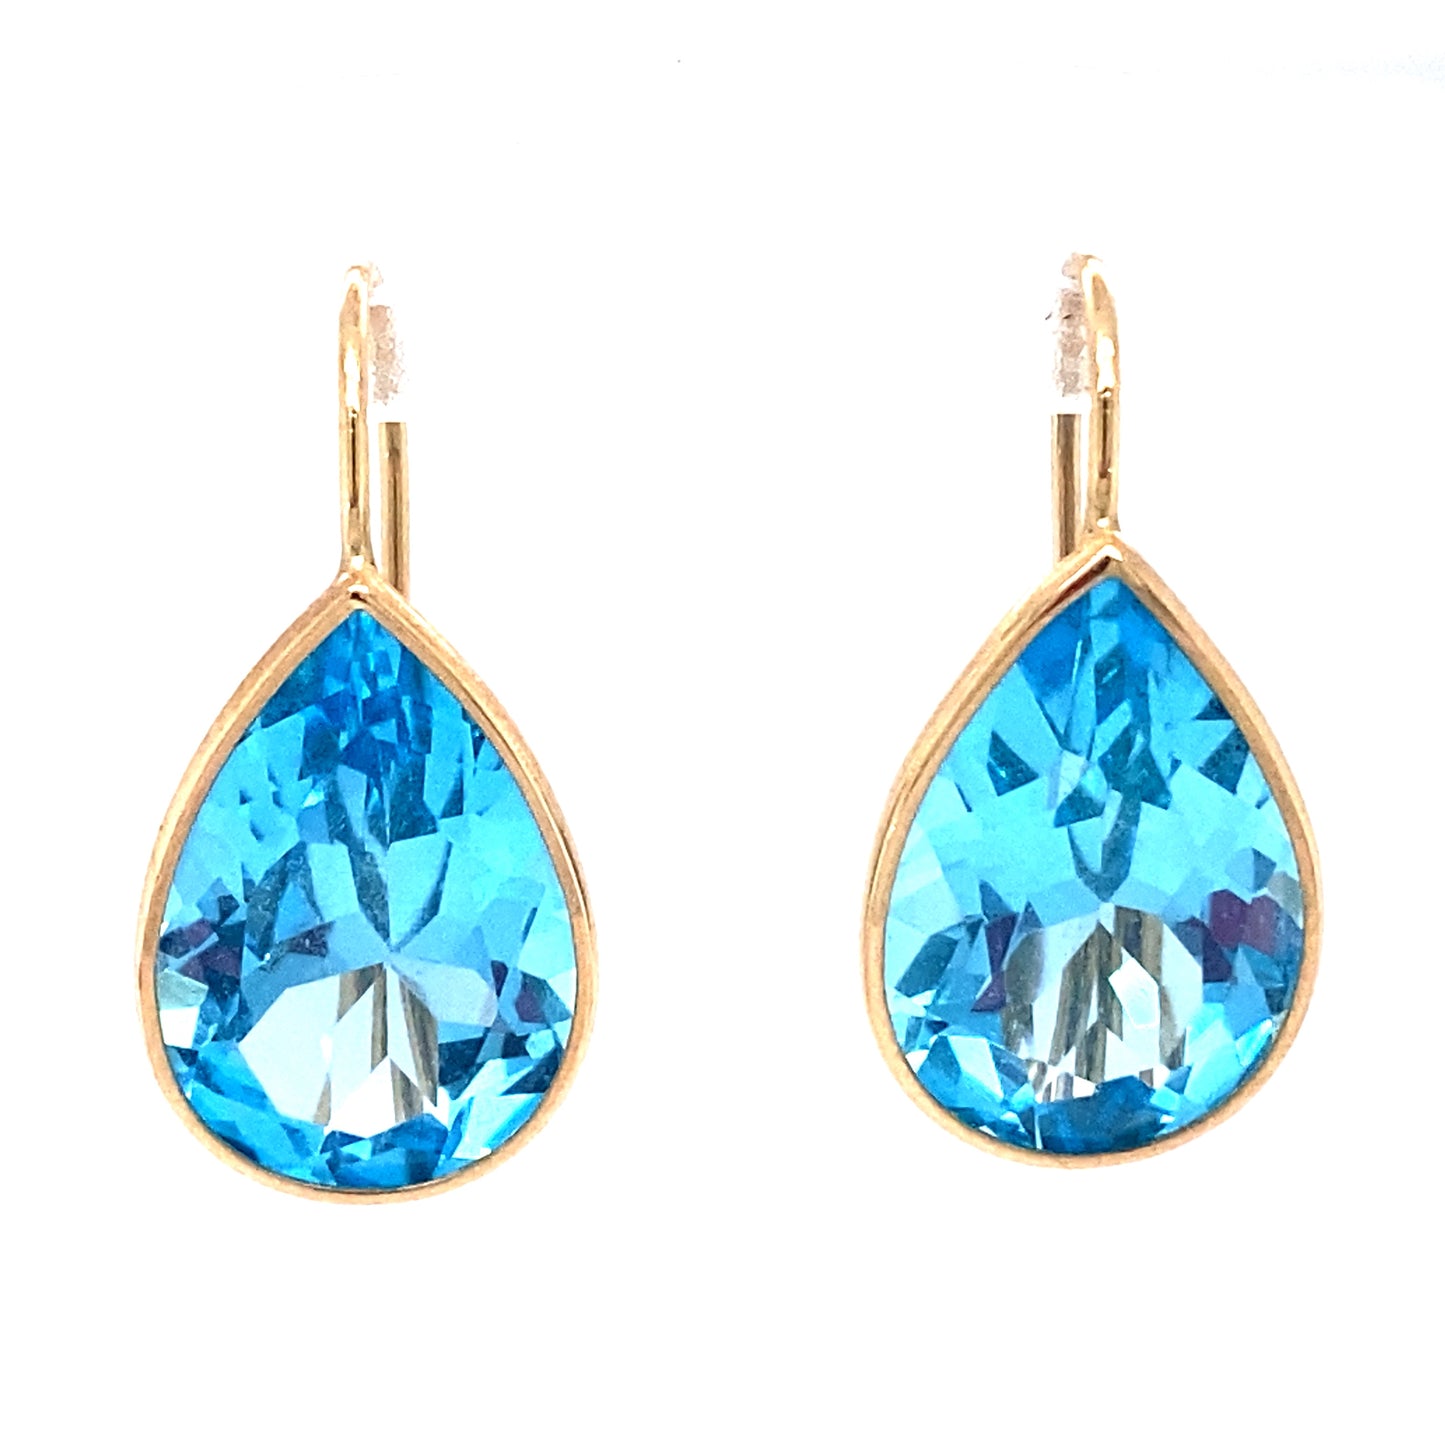 Circa 1980s 10.0 CTW Pear Cut Blue Topaz Bezel Set Dangle Earrings in 14K Gold